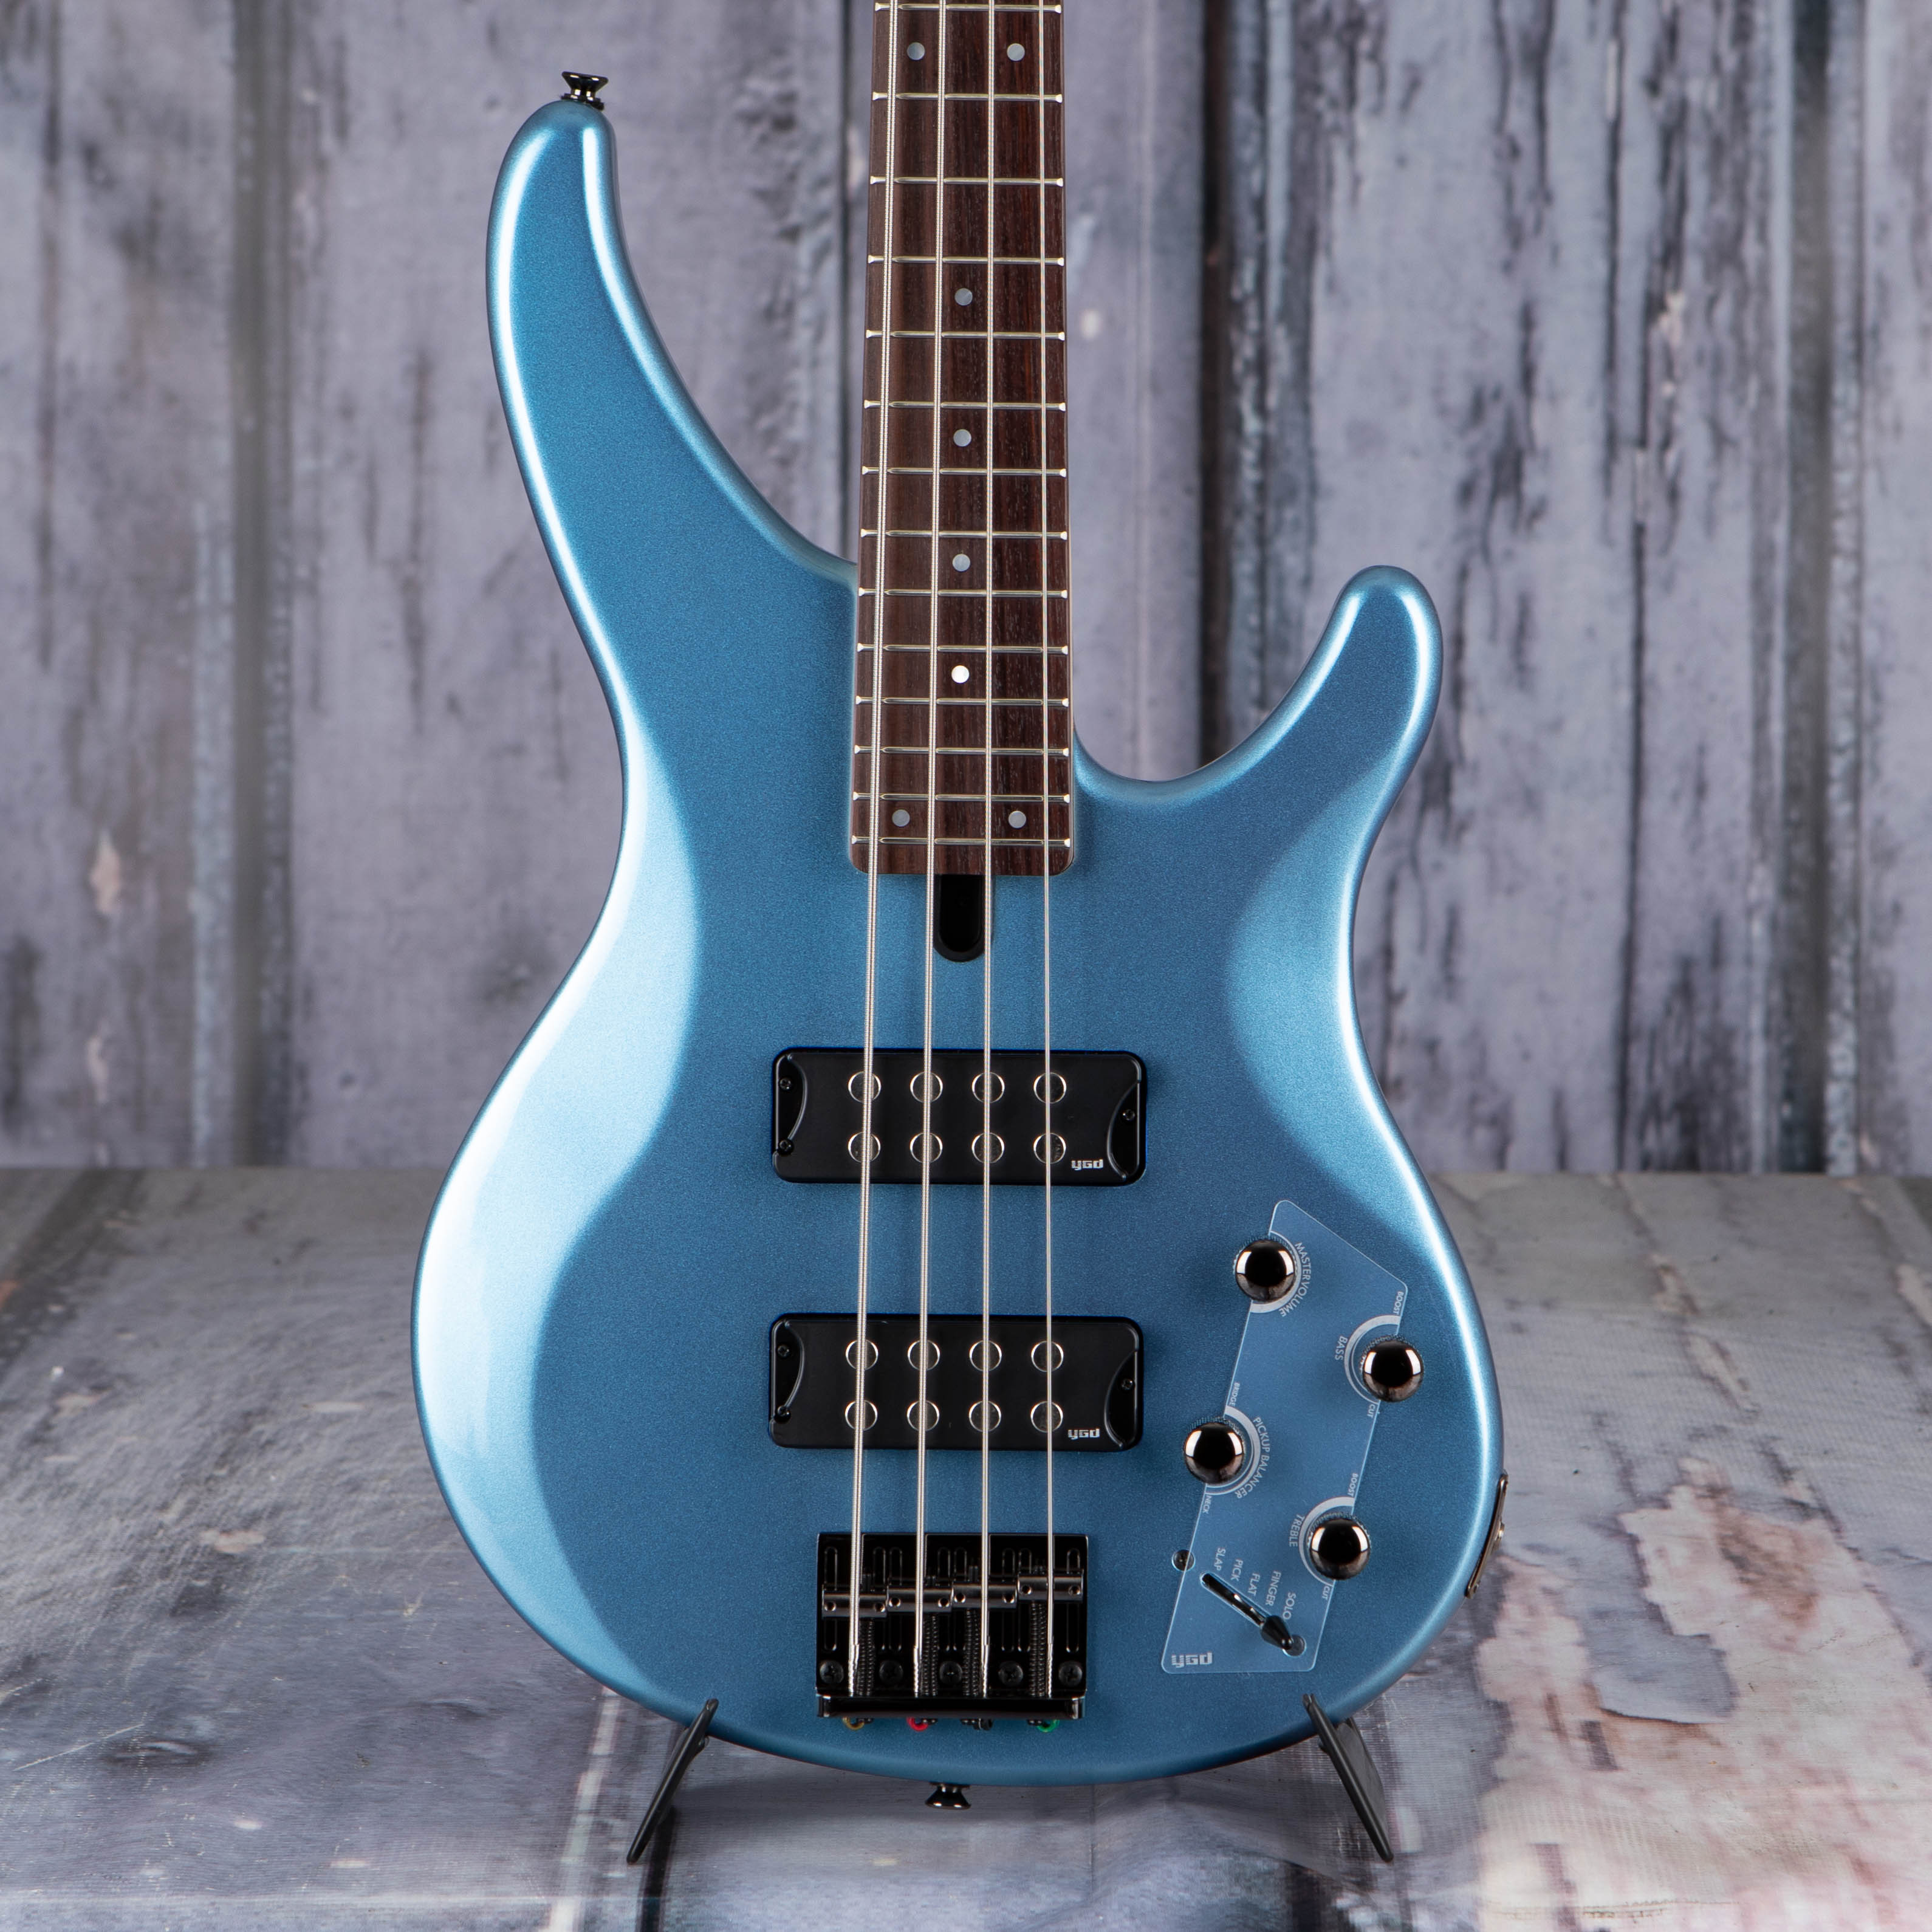 Yamaha TRBX304 Electric Bass Guitar, Factory Blue, front closeup